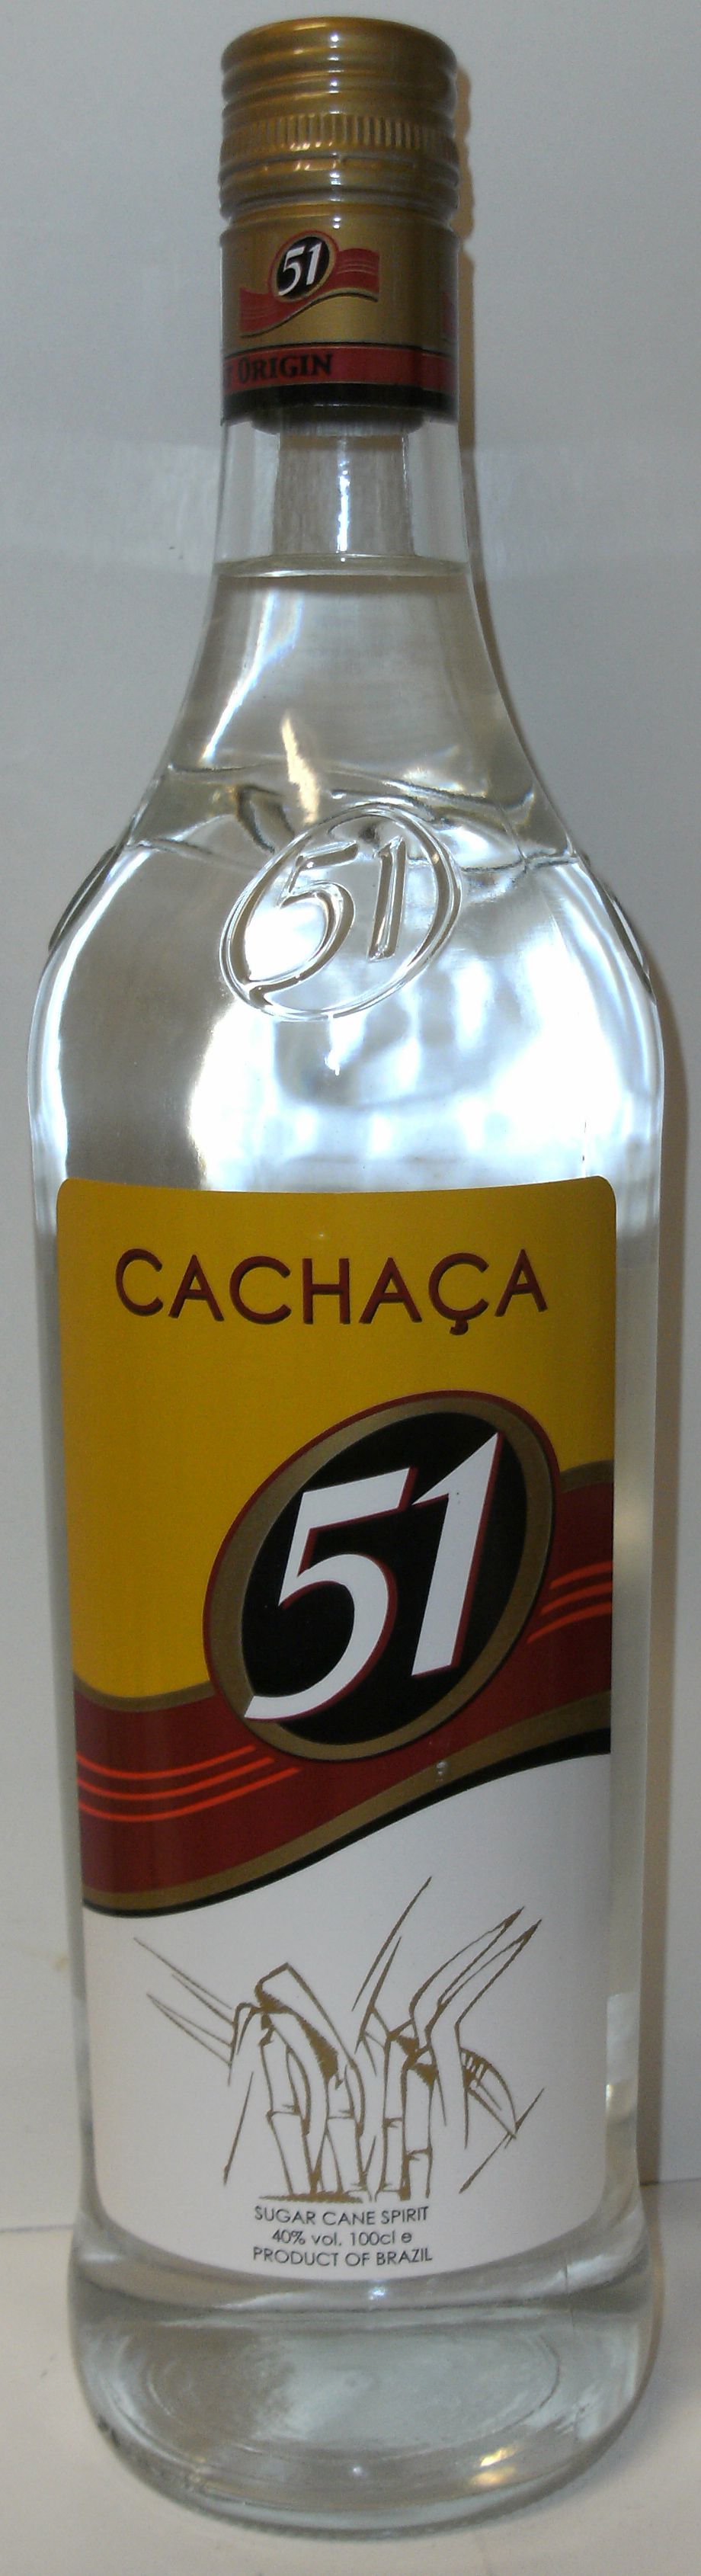 Rum: 1.0 - Cachaca ltr. - 51 - Pirassununga 40%